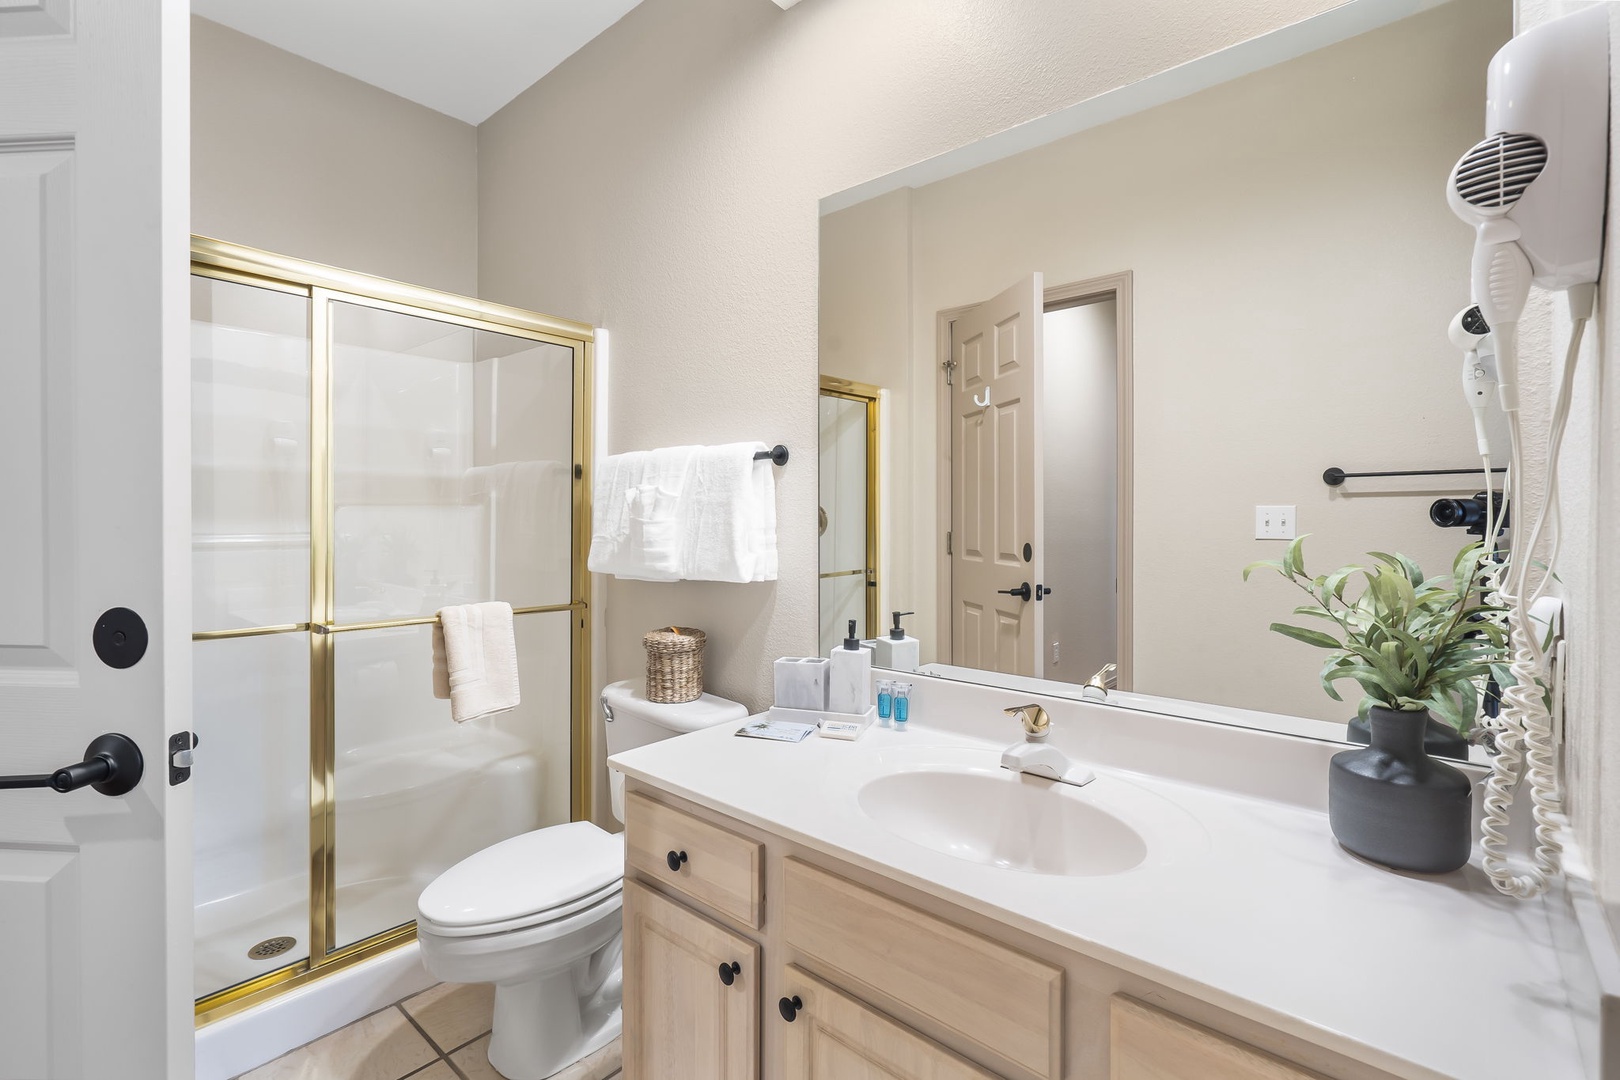 The queen bedroom en suite offers an oversized single vanity & glass shower